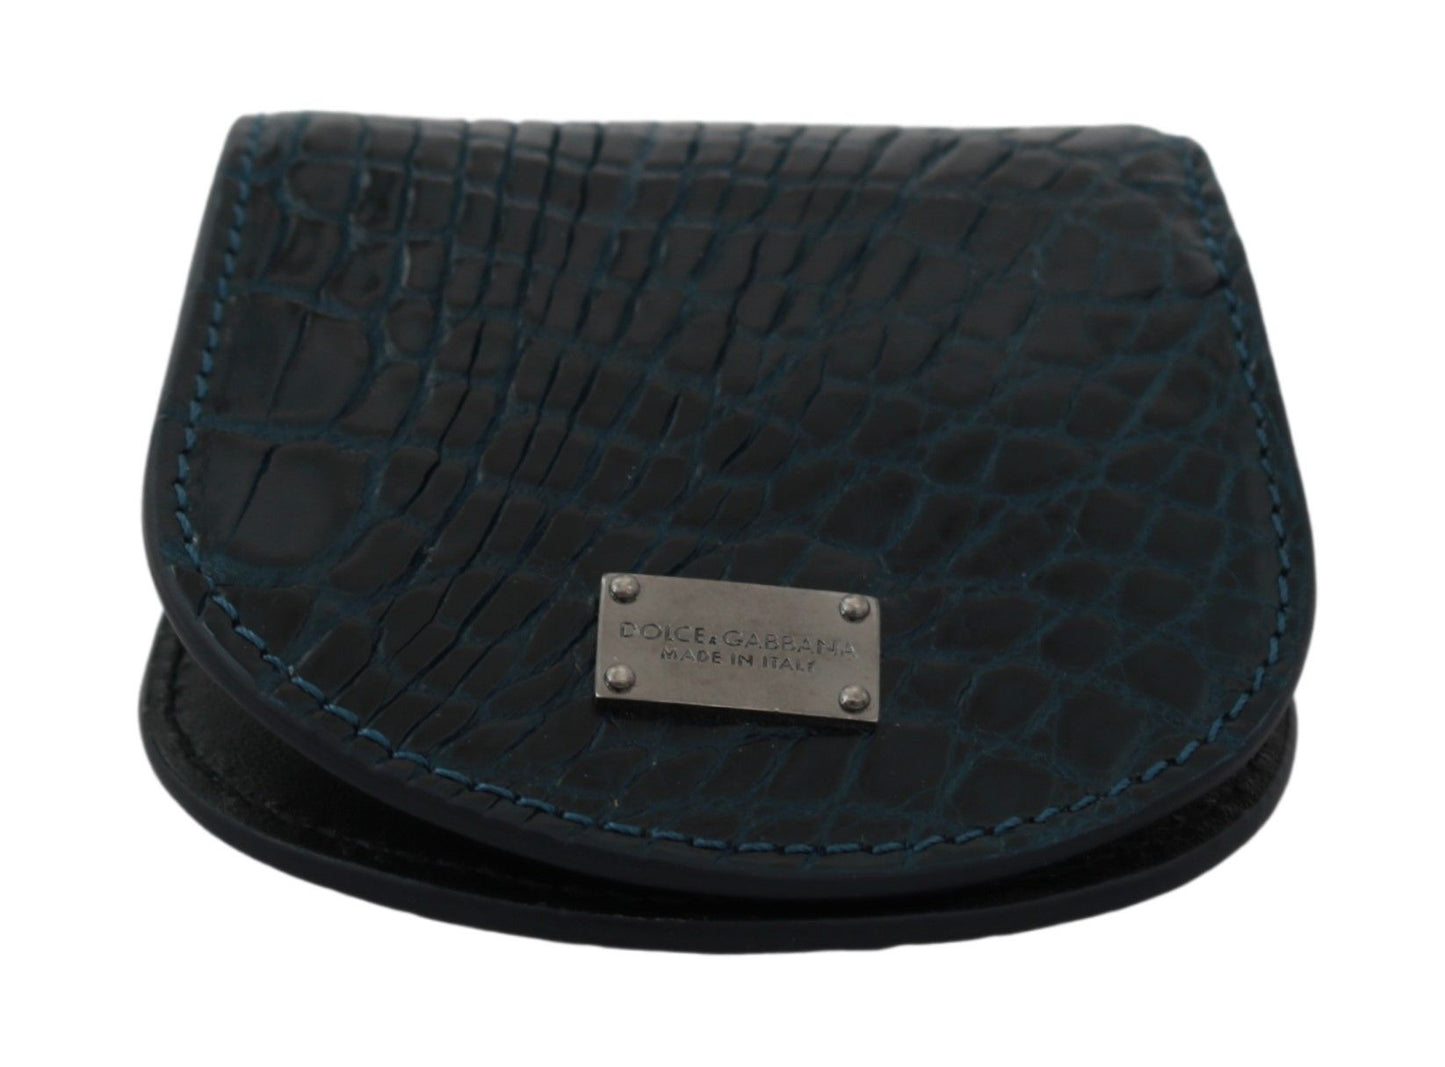 Dolce & Gabbana Exquisite Dark Blue Coin Case Wallet